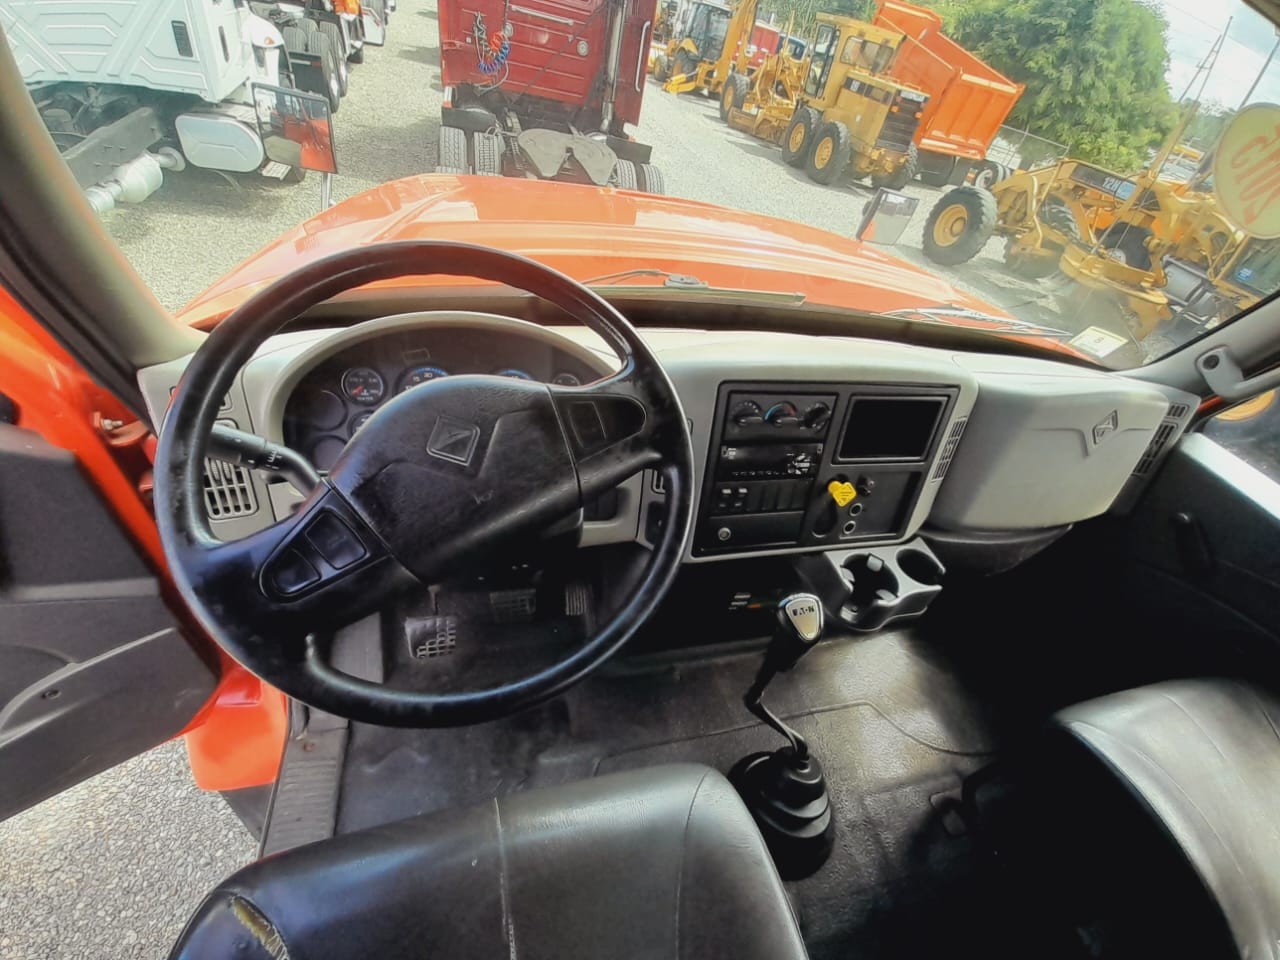 camiones y vehiculos pesados - INTERNATIONAL WORKSTAR 7400 año 2015 5